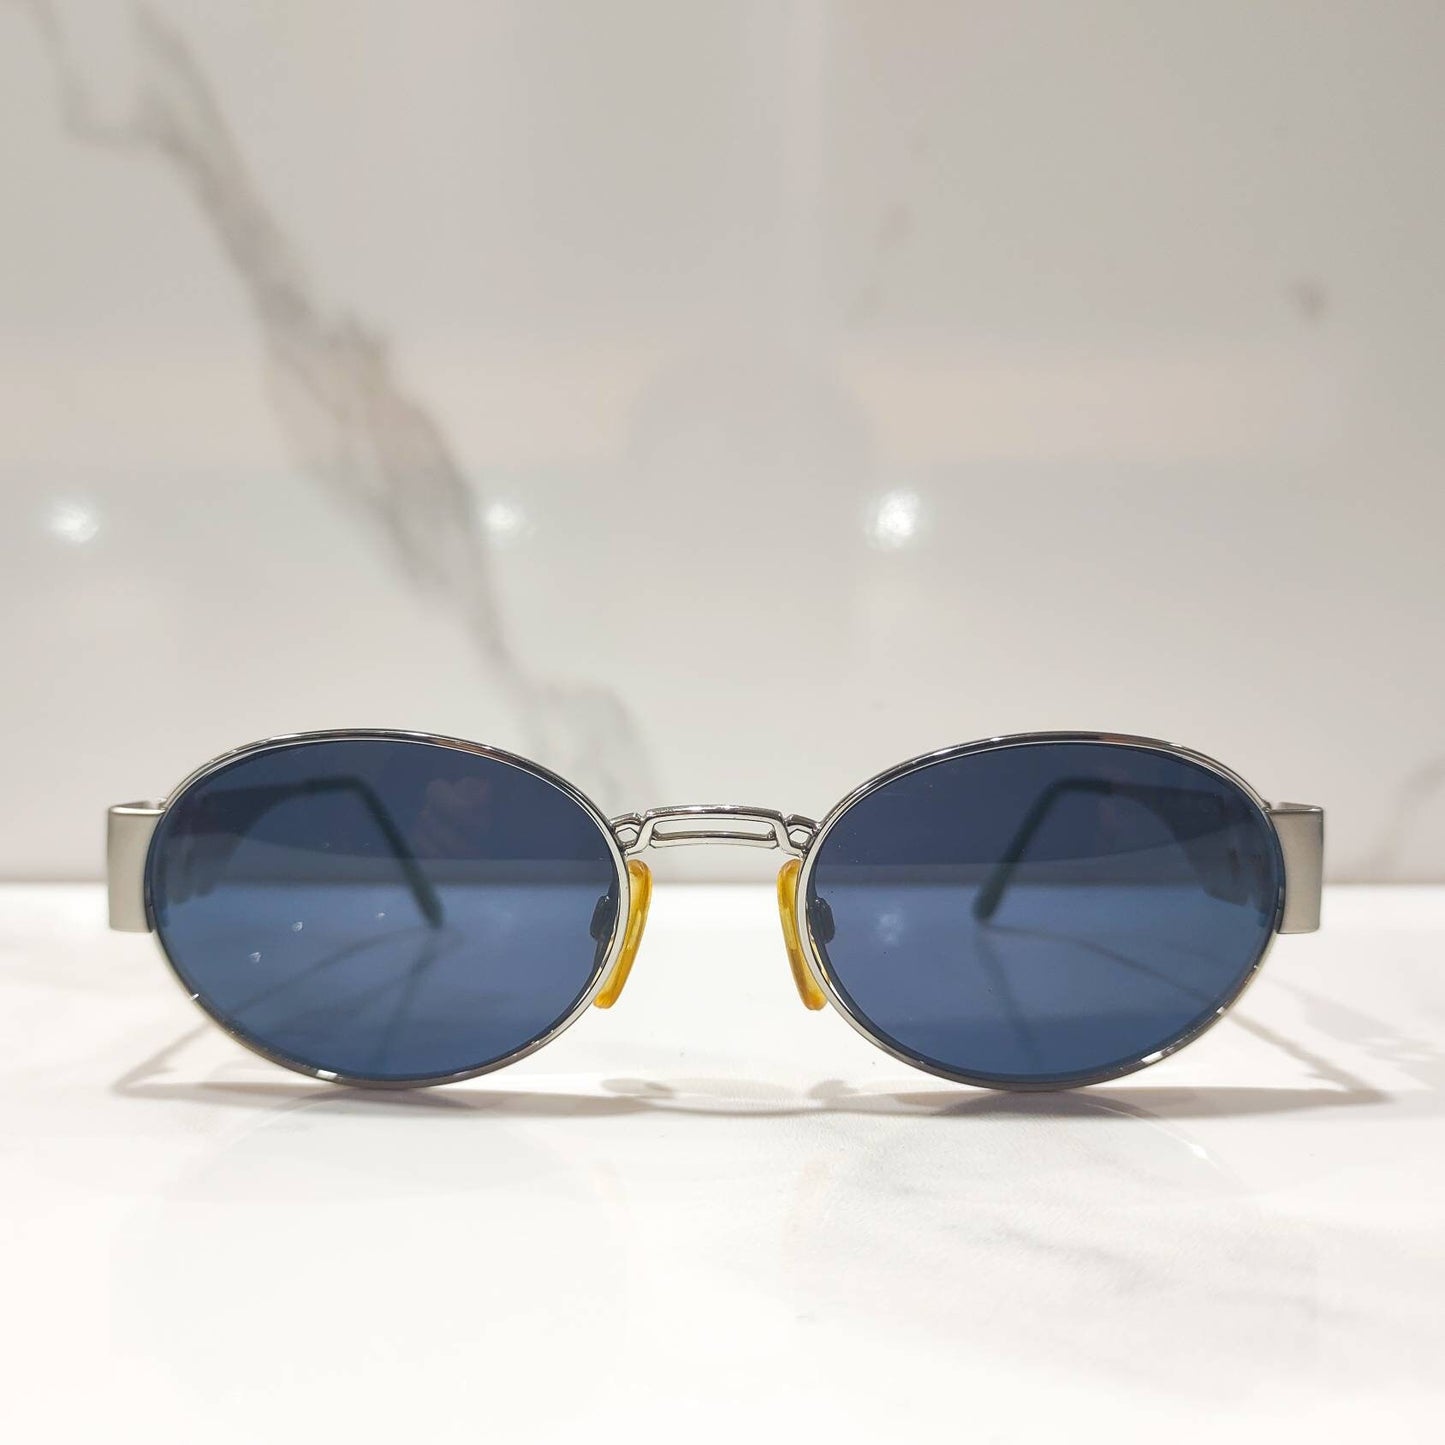 Ysl occhiali vintage Yves Saint laurent frame sunglasses NOS 80s versace gucci Lunette brille